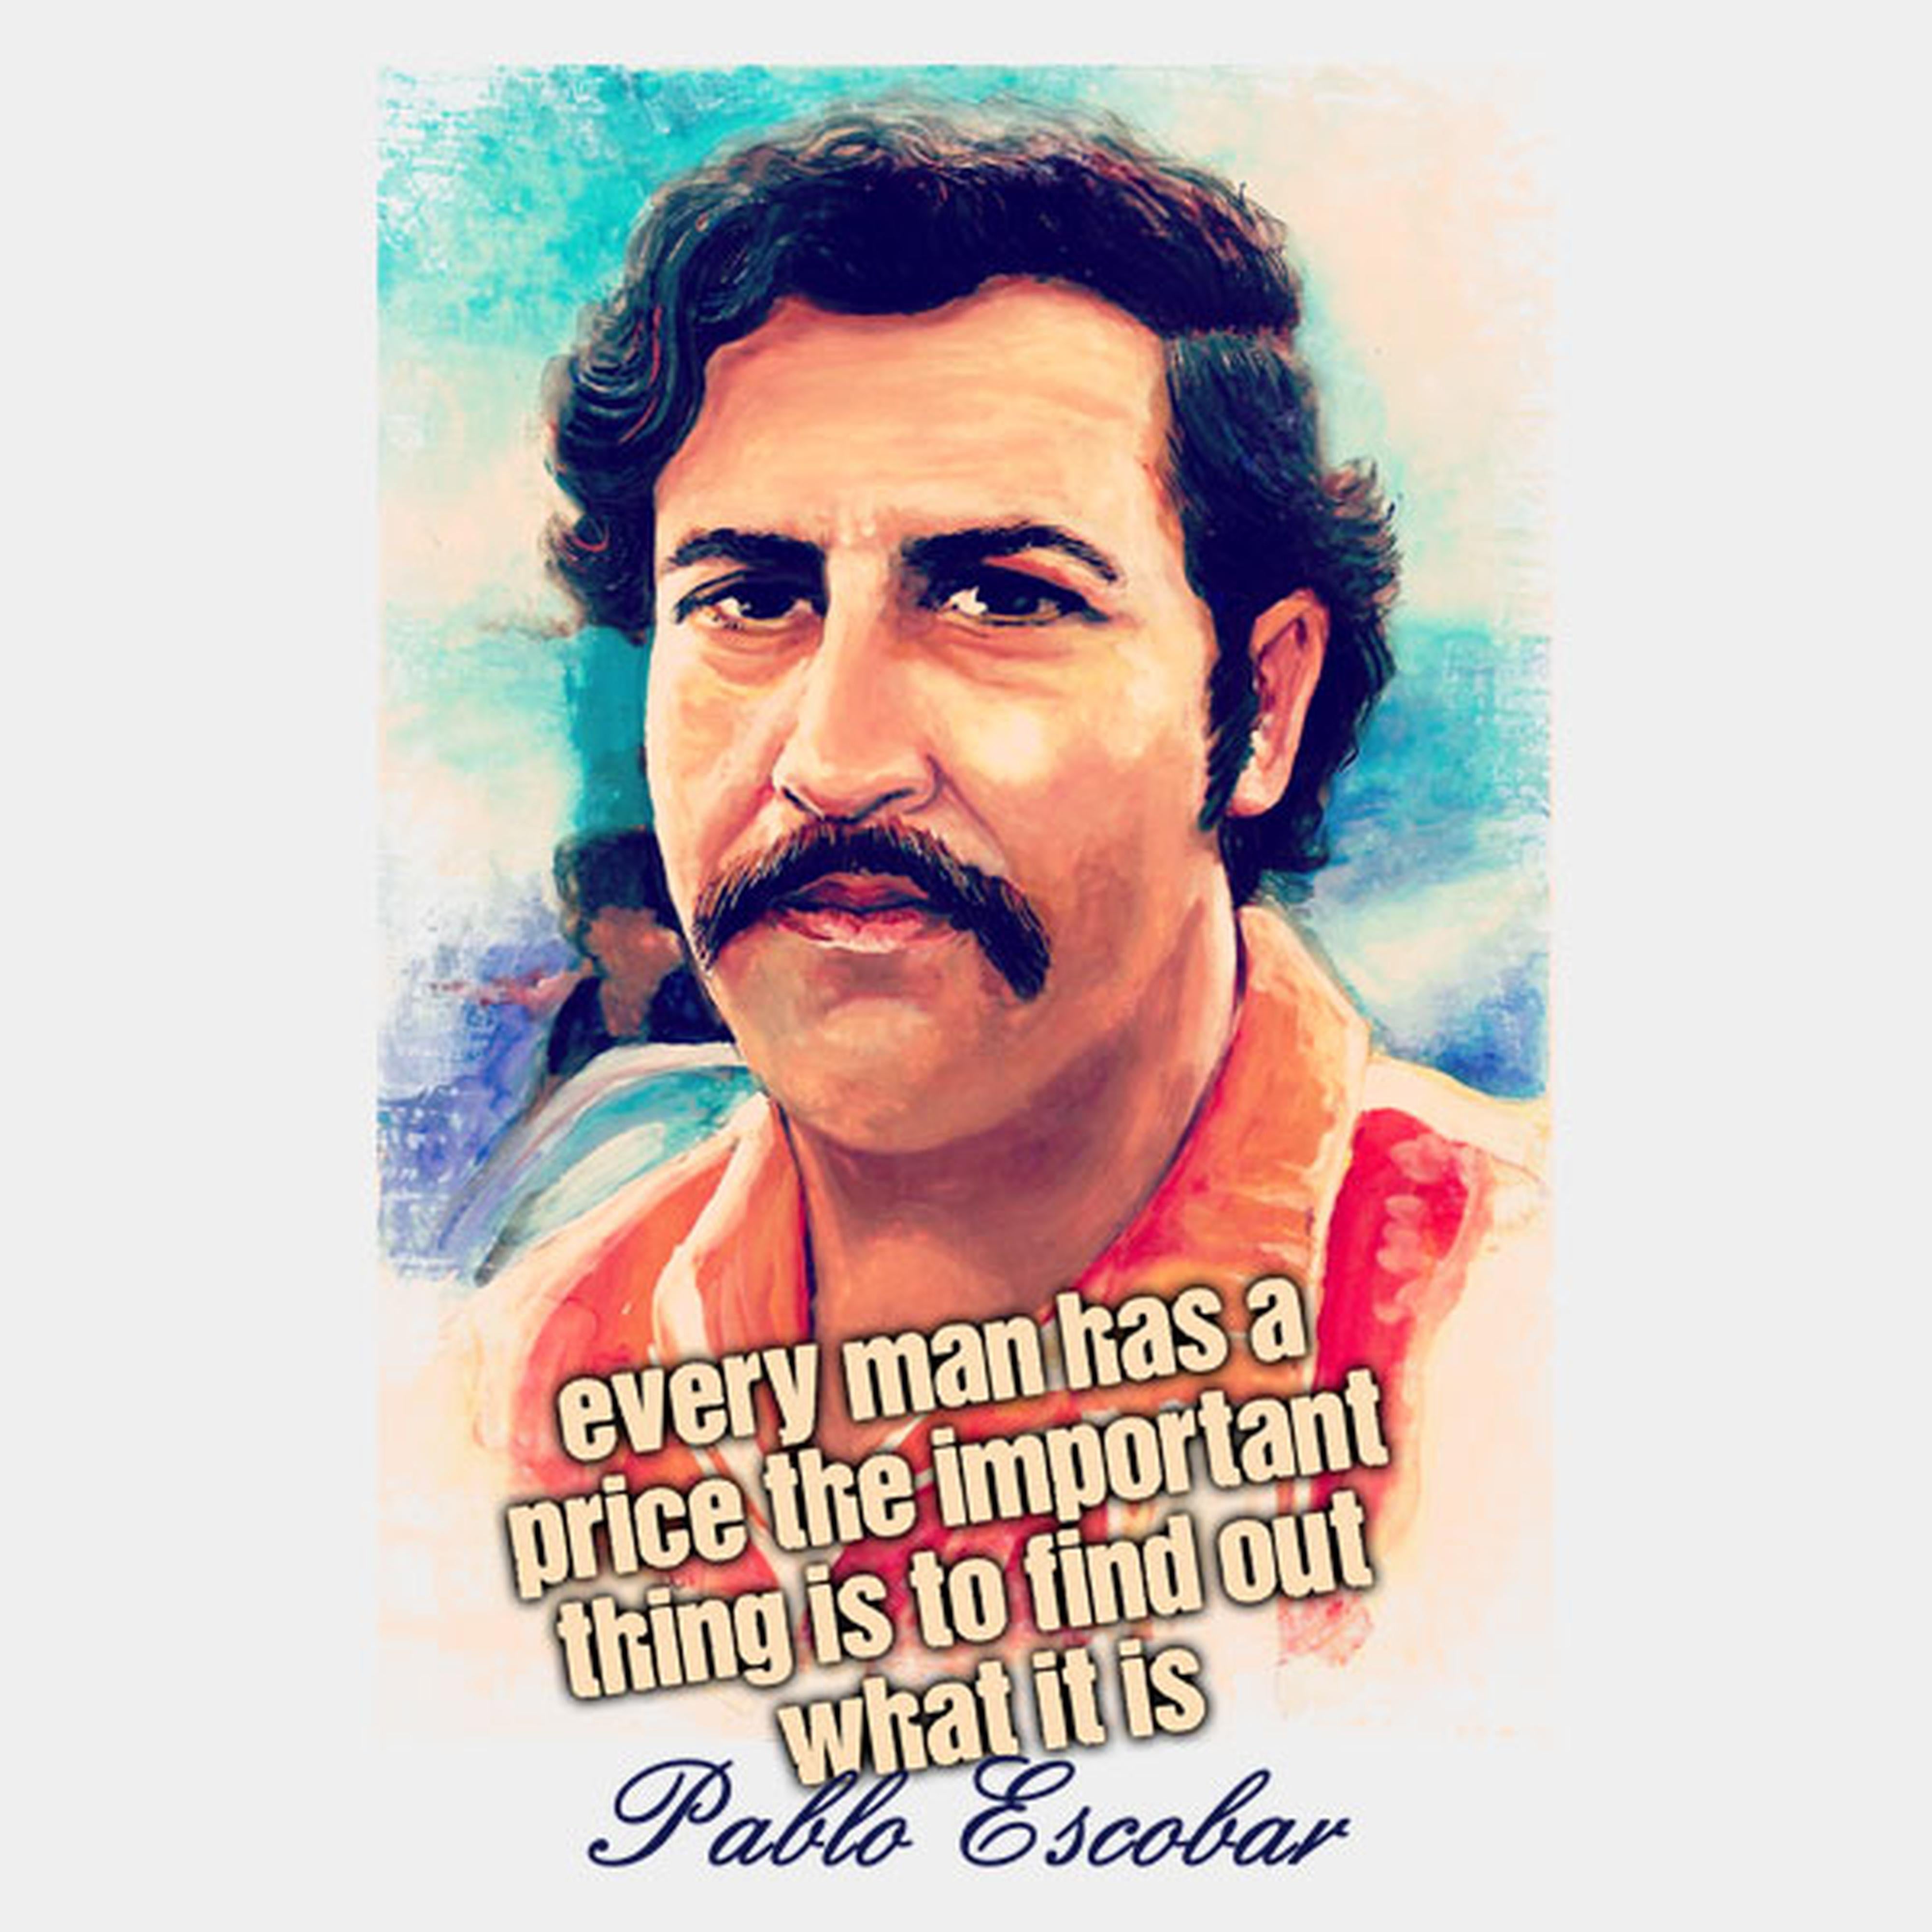 Pablo Escobar price - T-shirt